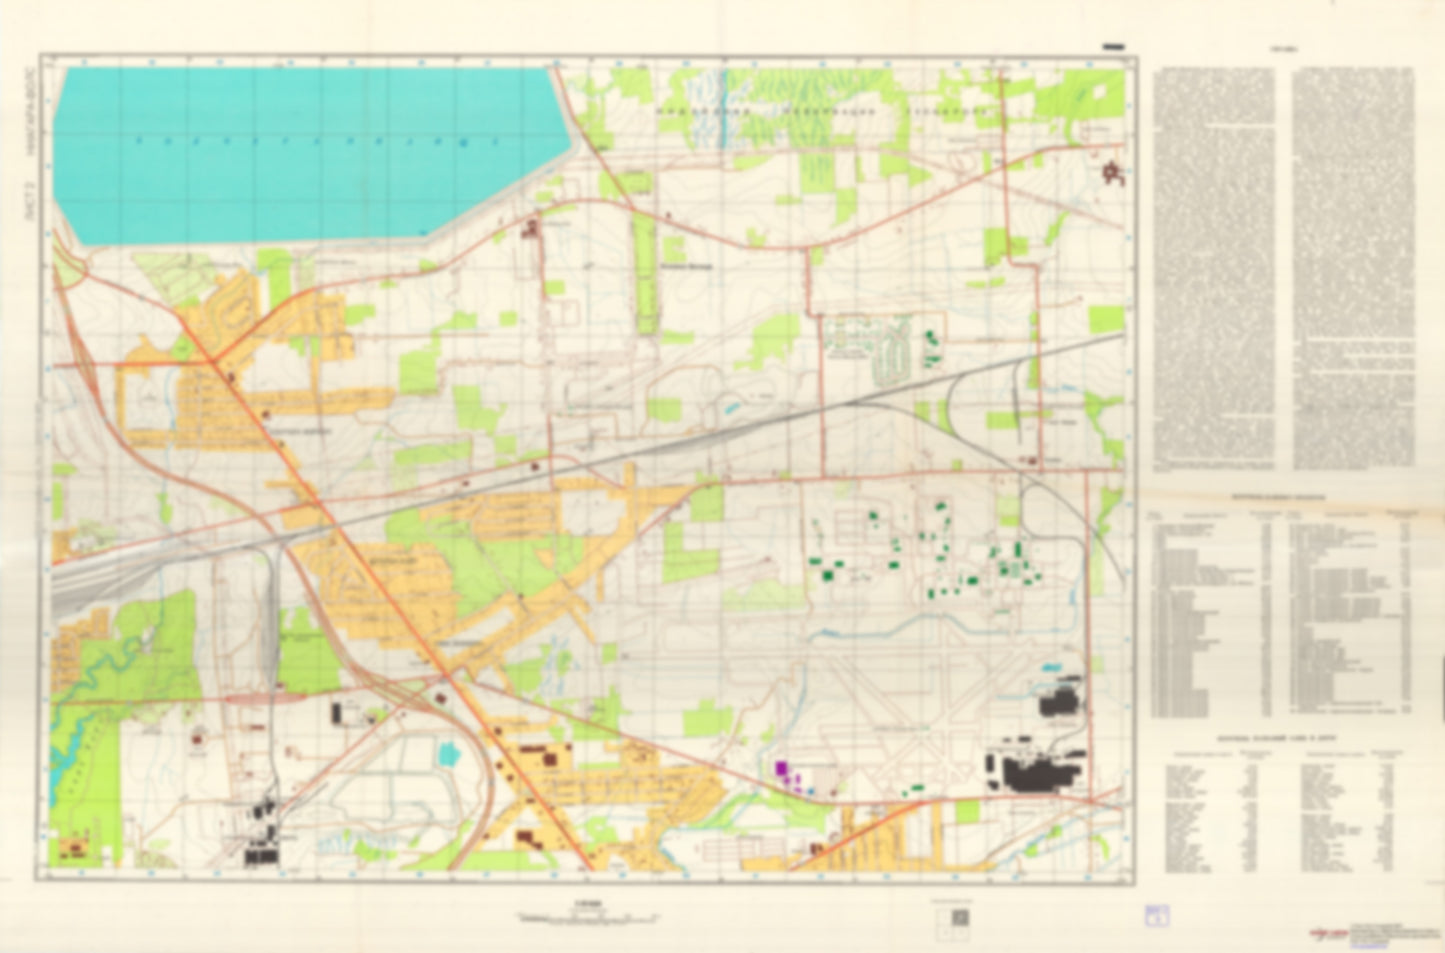 Niagara Falls, NY 2 (USA) - Soviet Military City Plans